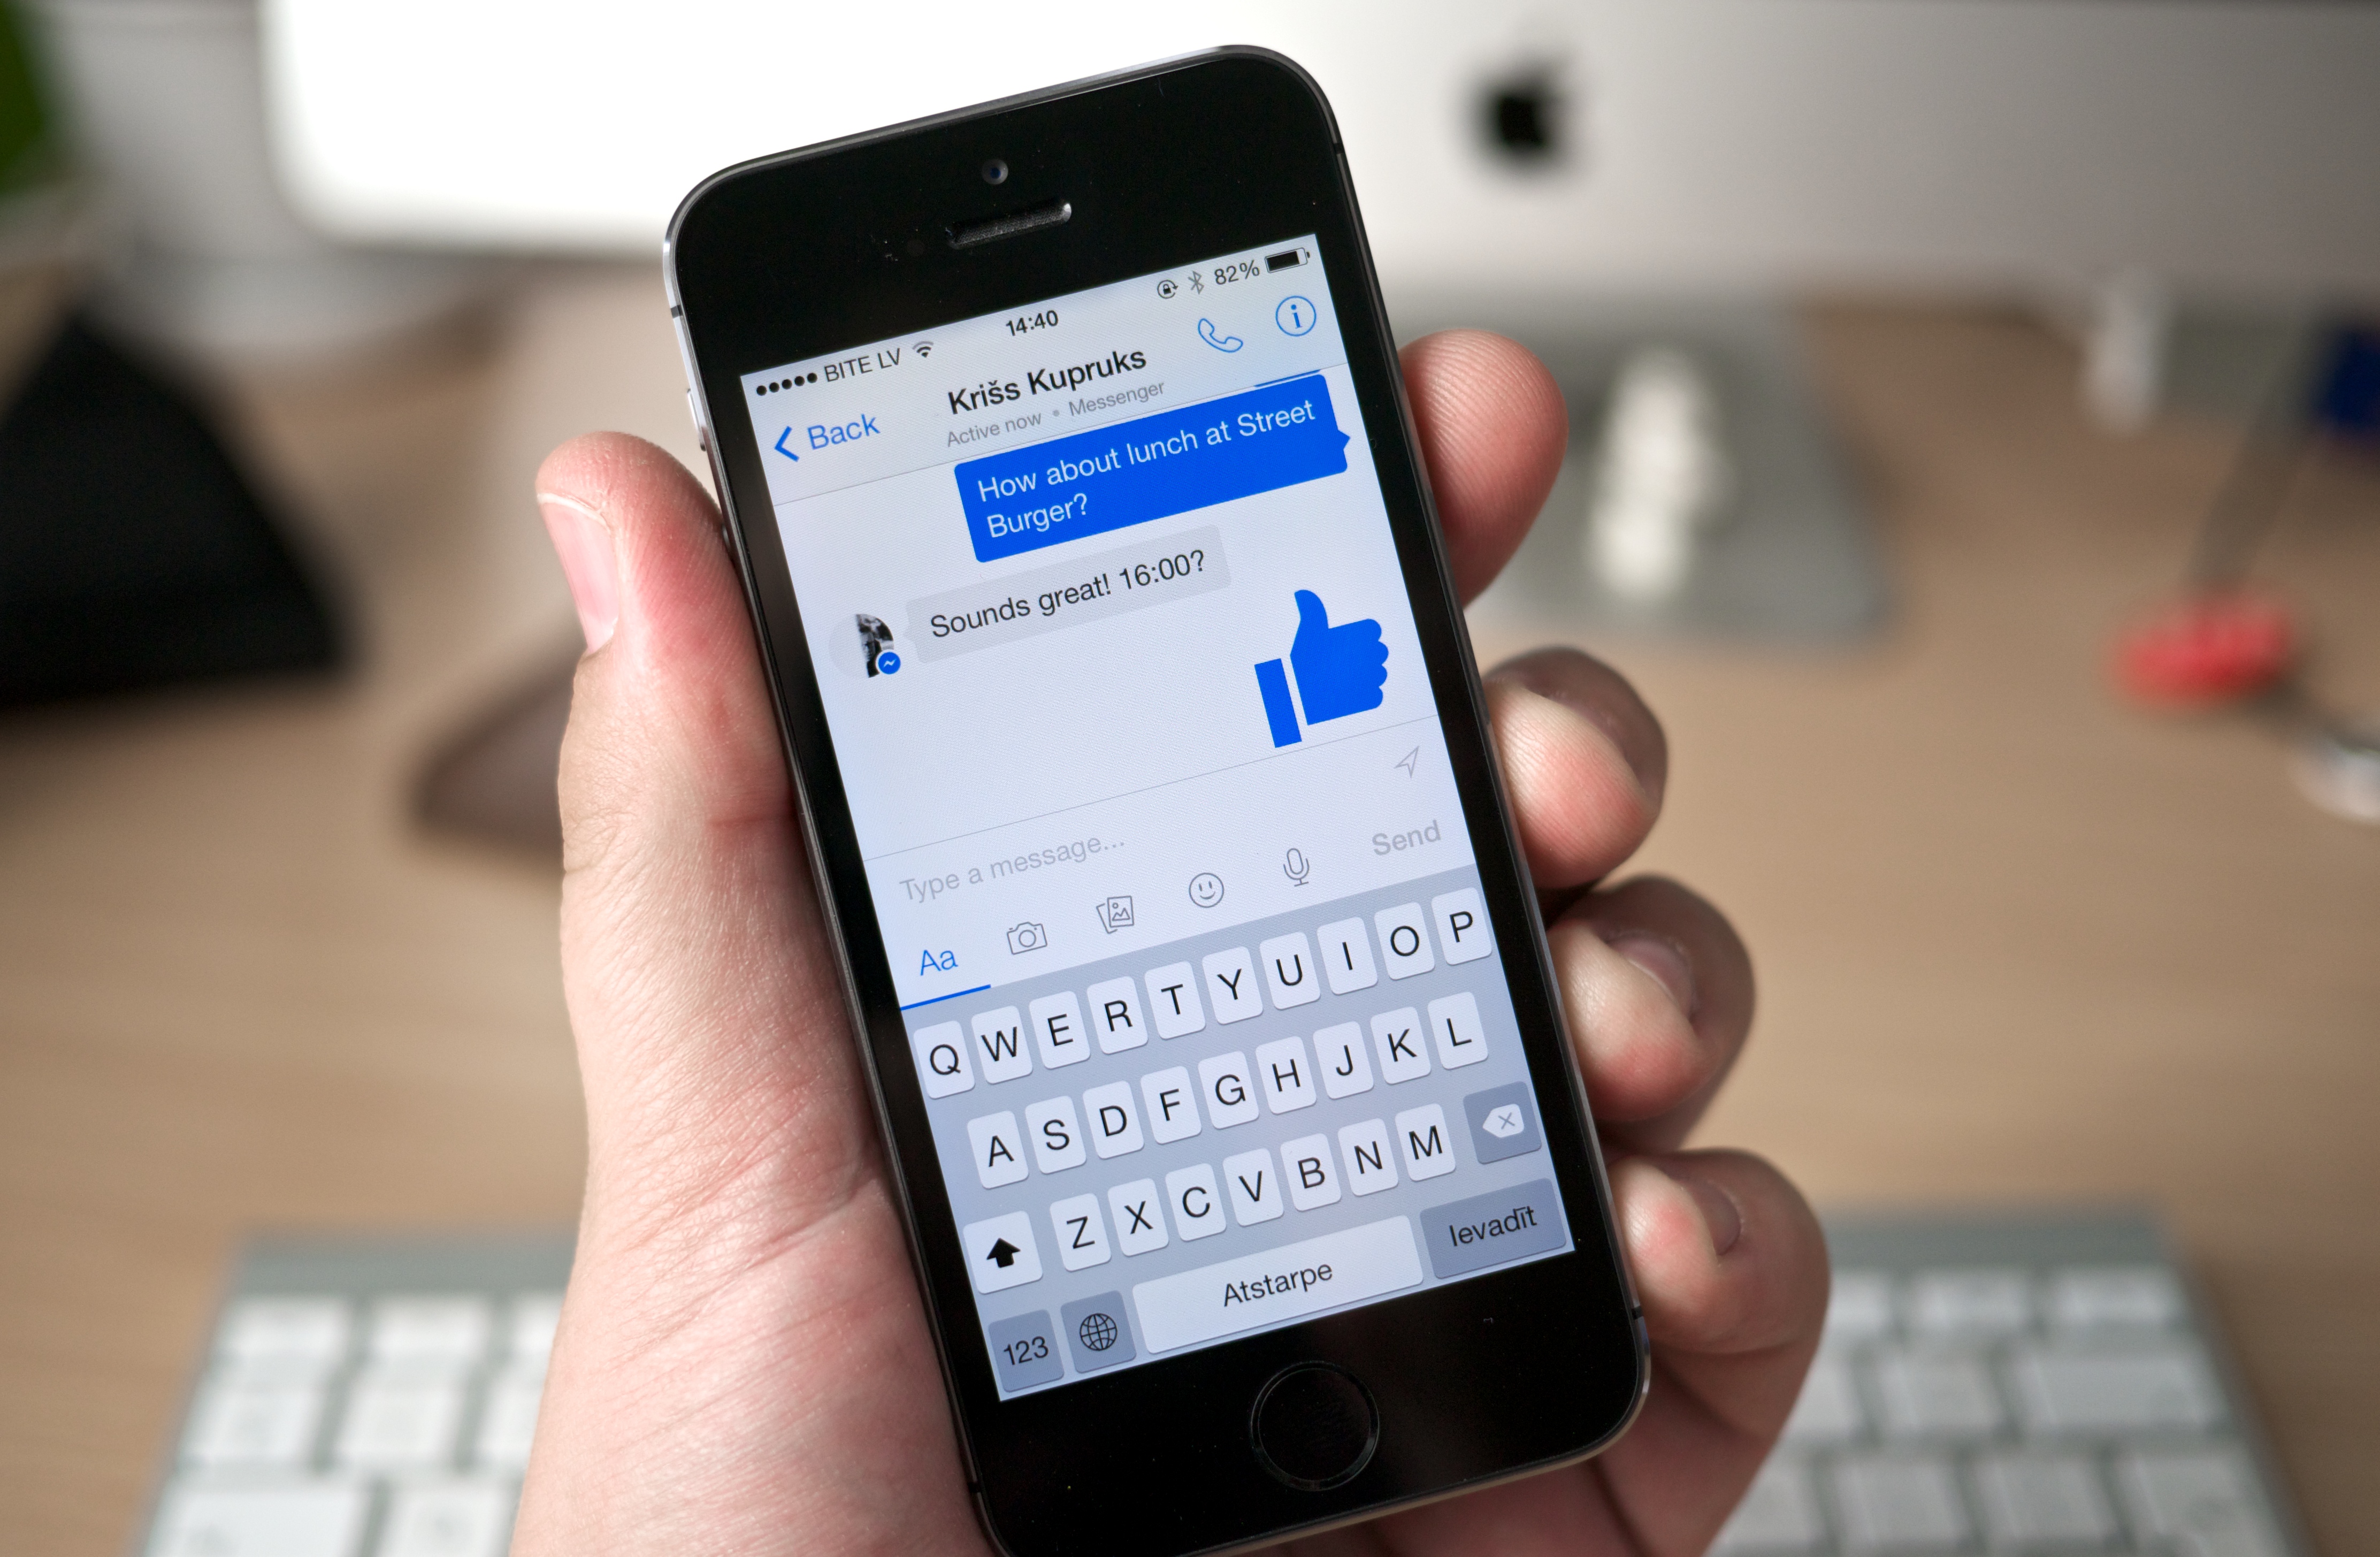 Facebook ønsker å flytte flere brukere inn på Messenger, nå deaktiverer de lynmeldinger fra mobilversjonen av nettsidene sine.